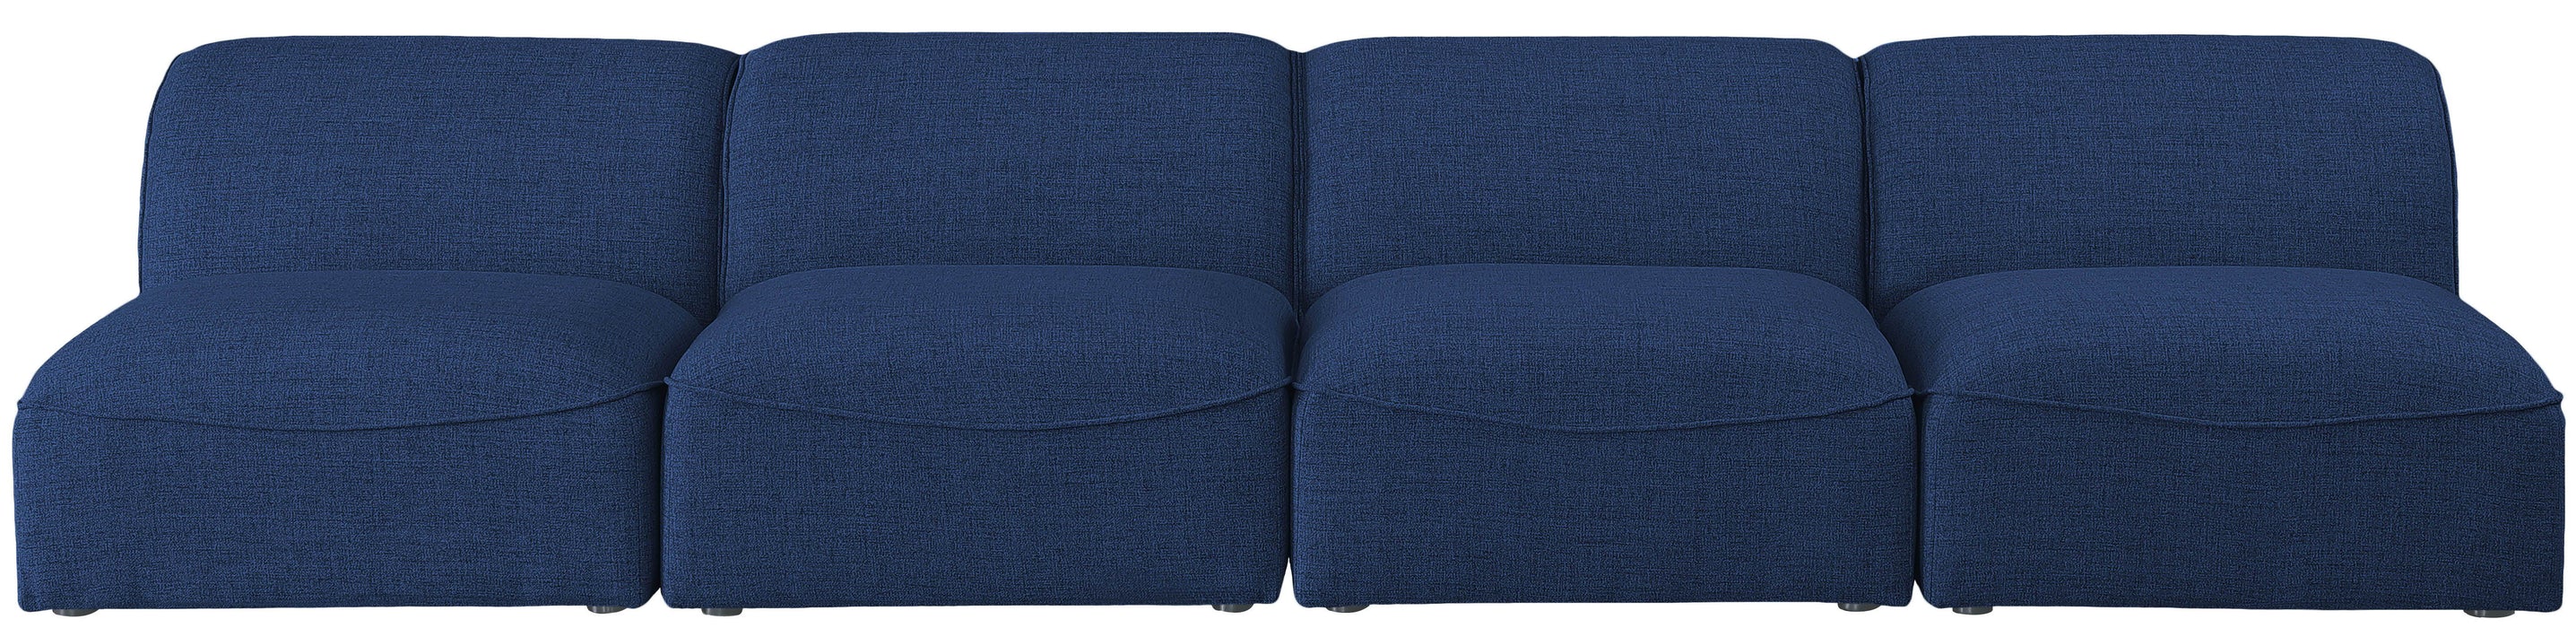 Miramar - Modular Sofa Armless - 4 Seats